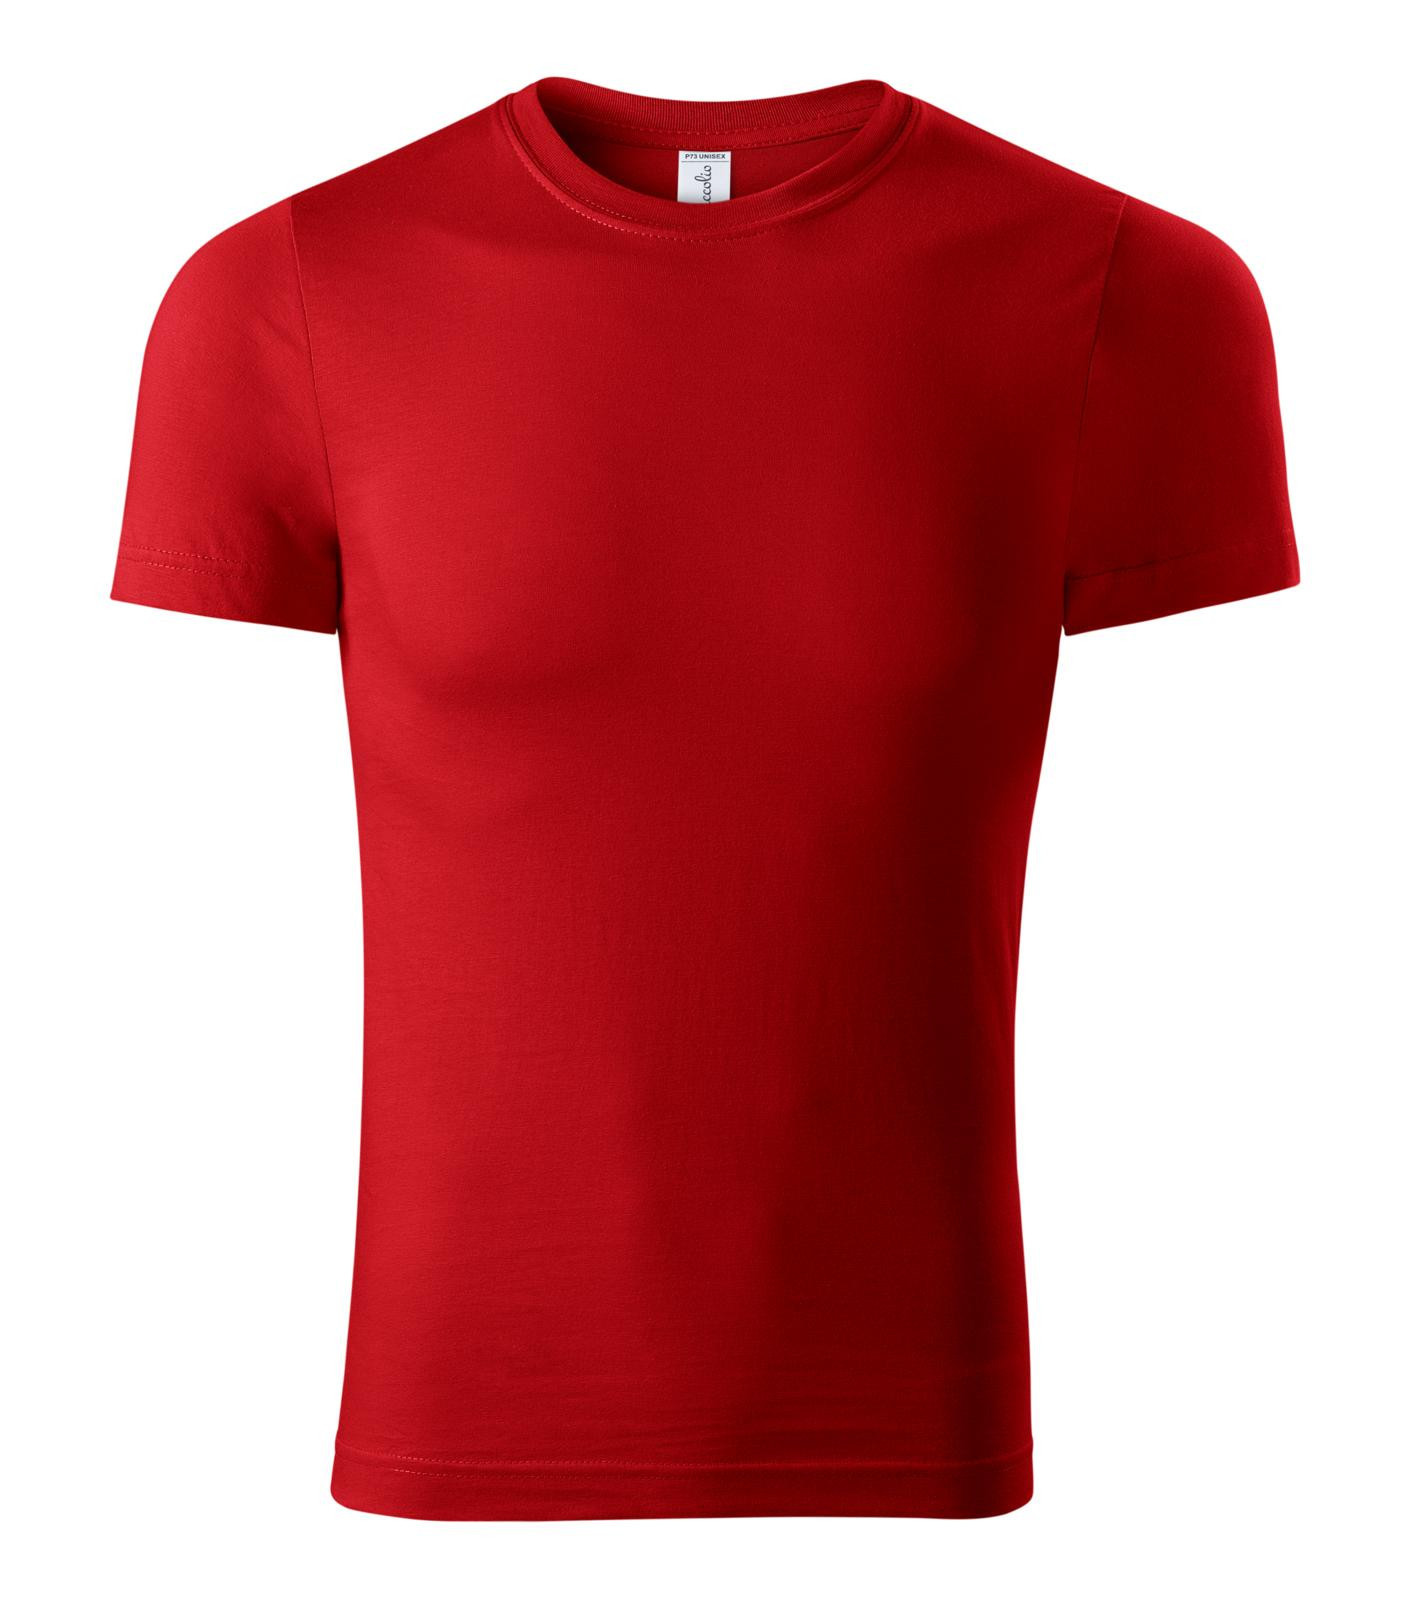 Unisex tričko Piccolio Paint P73 - veľkosť: M, farba: červená